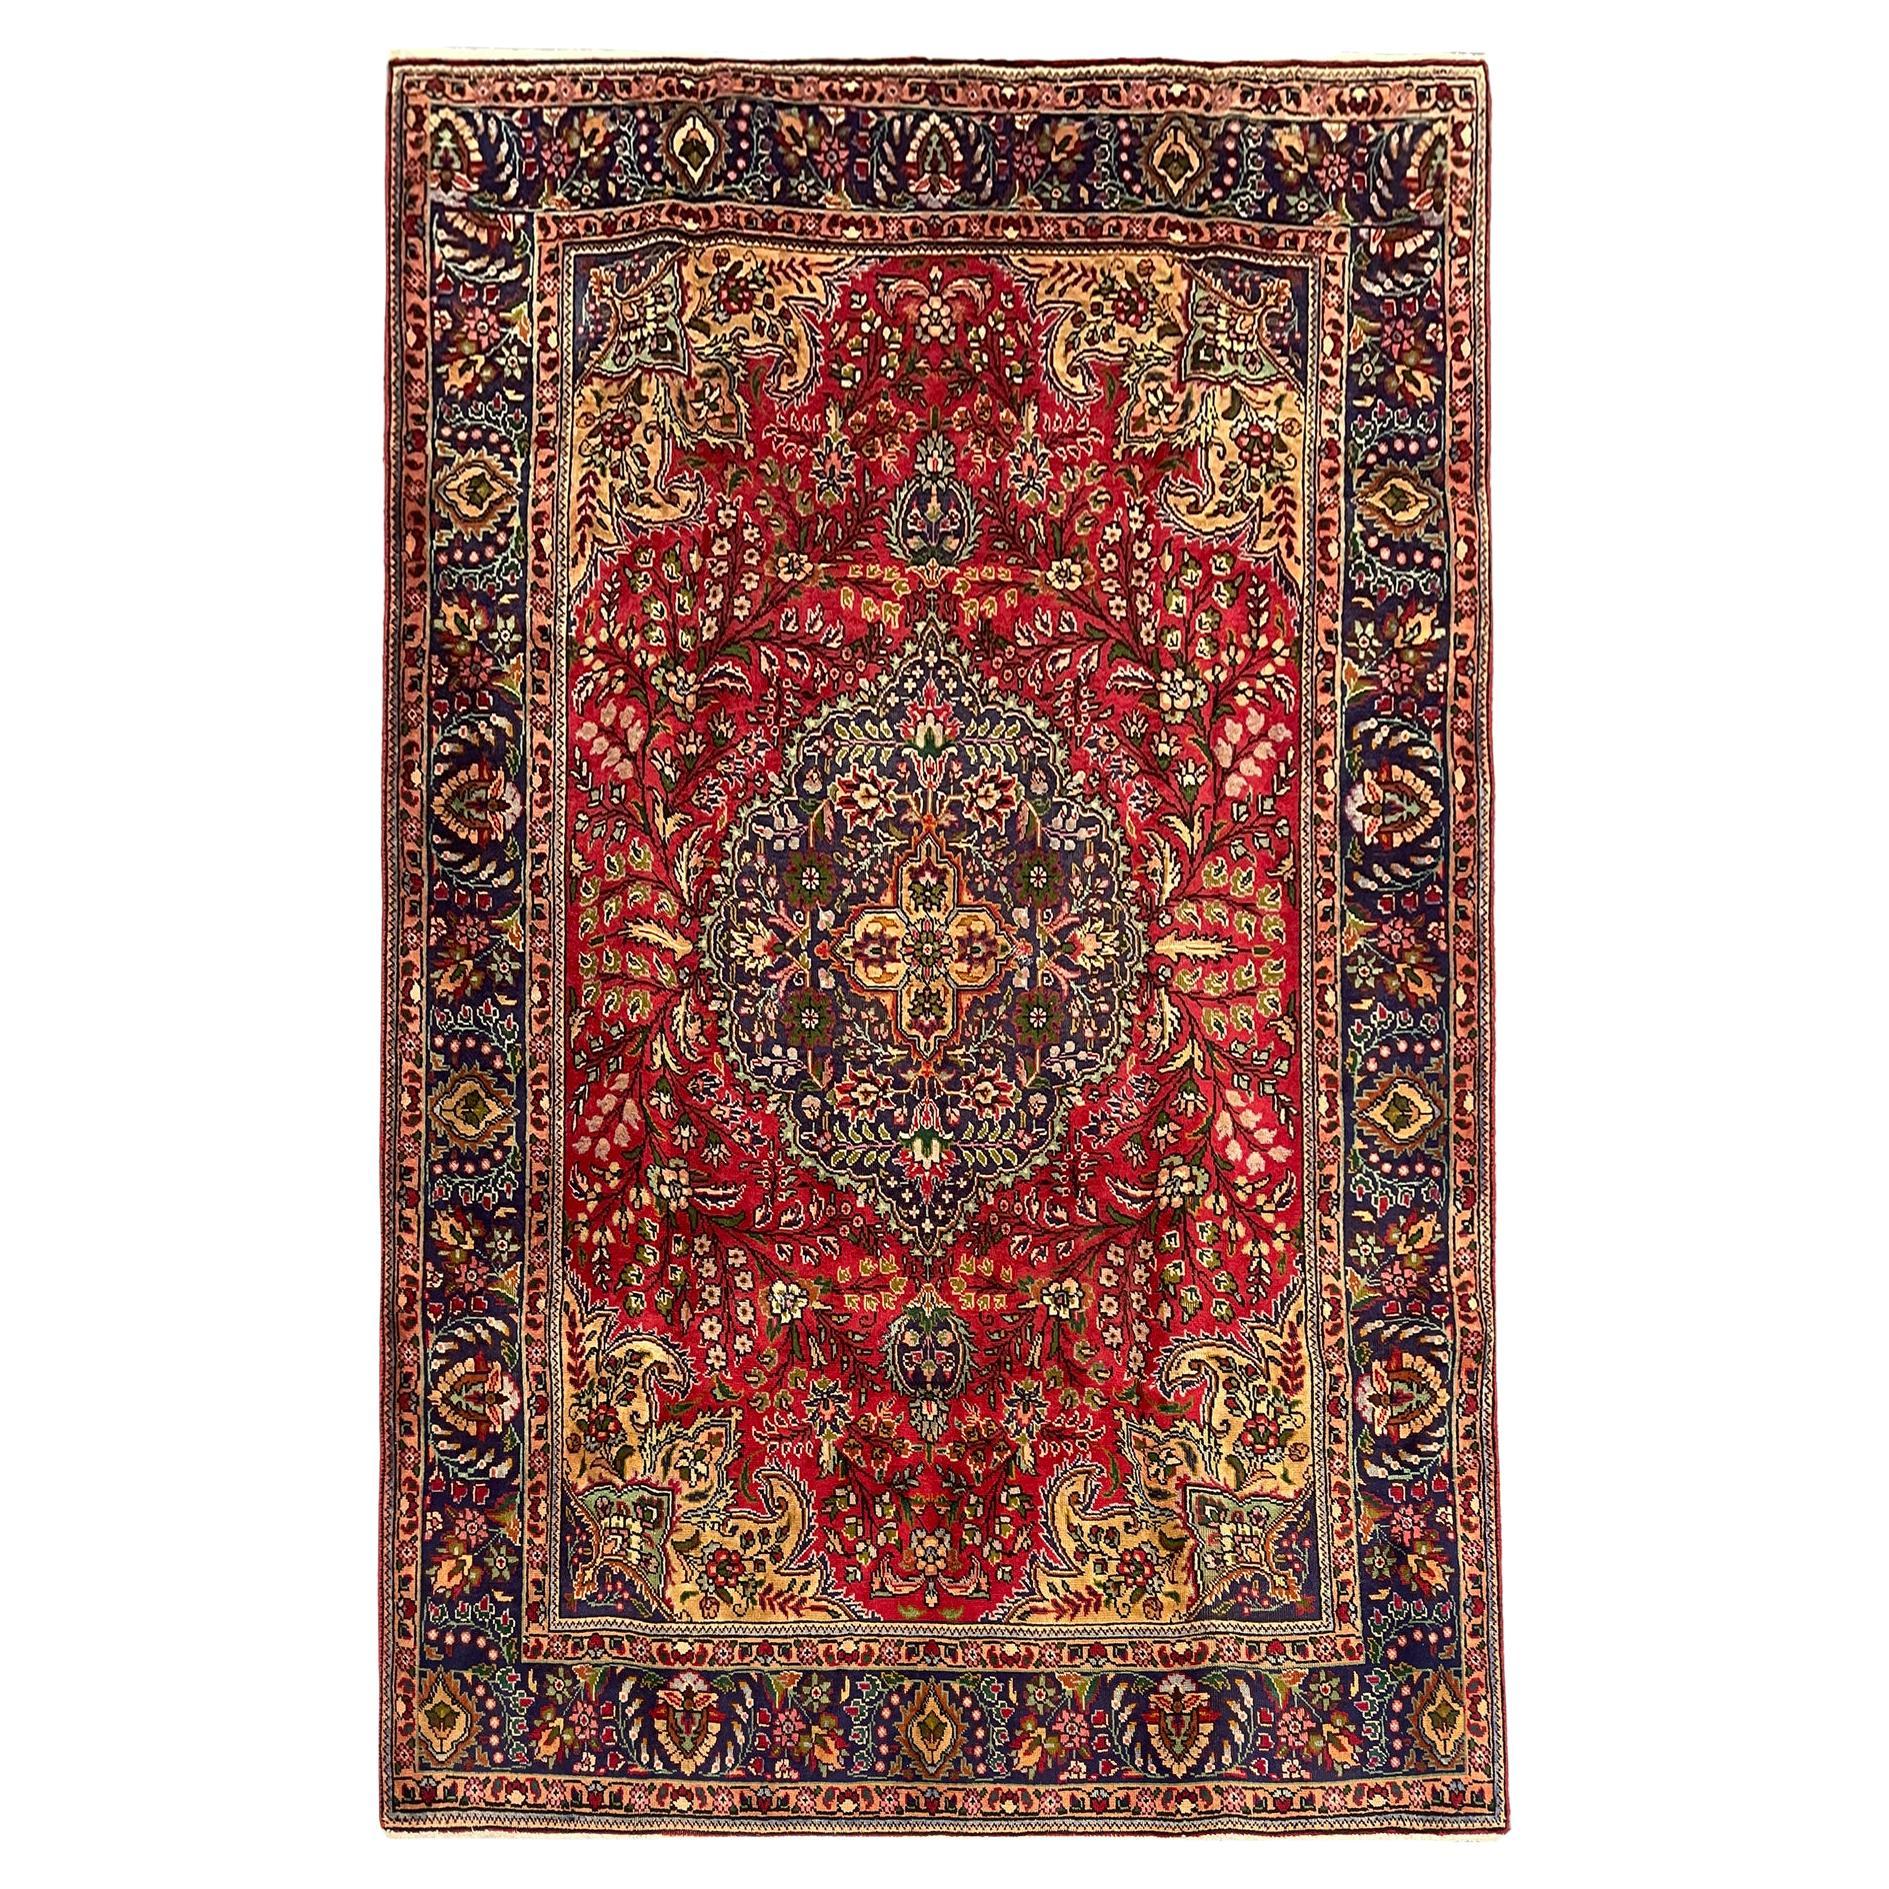 Teppich aus Wolle, handgewebter orientalischer Teppich mit Blumenmuster